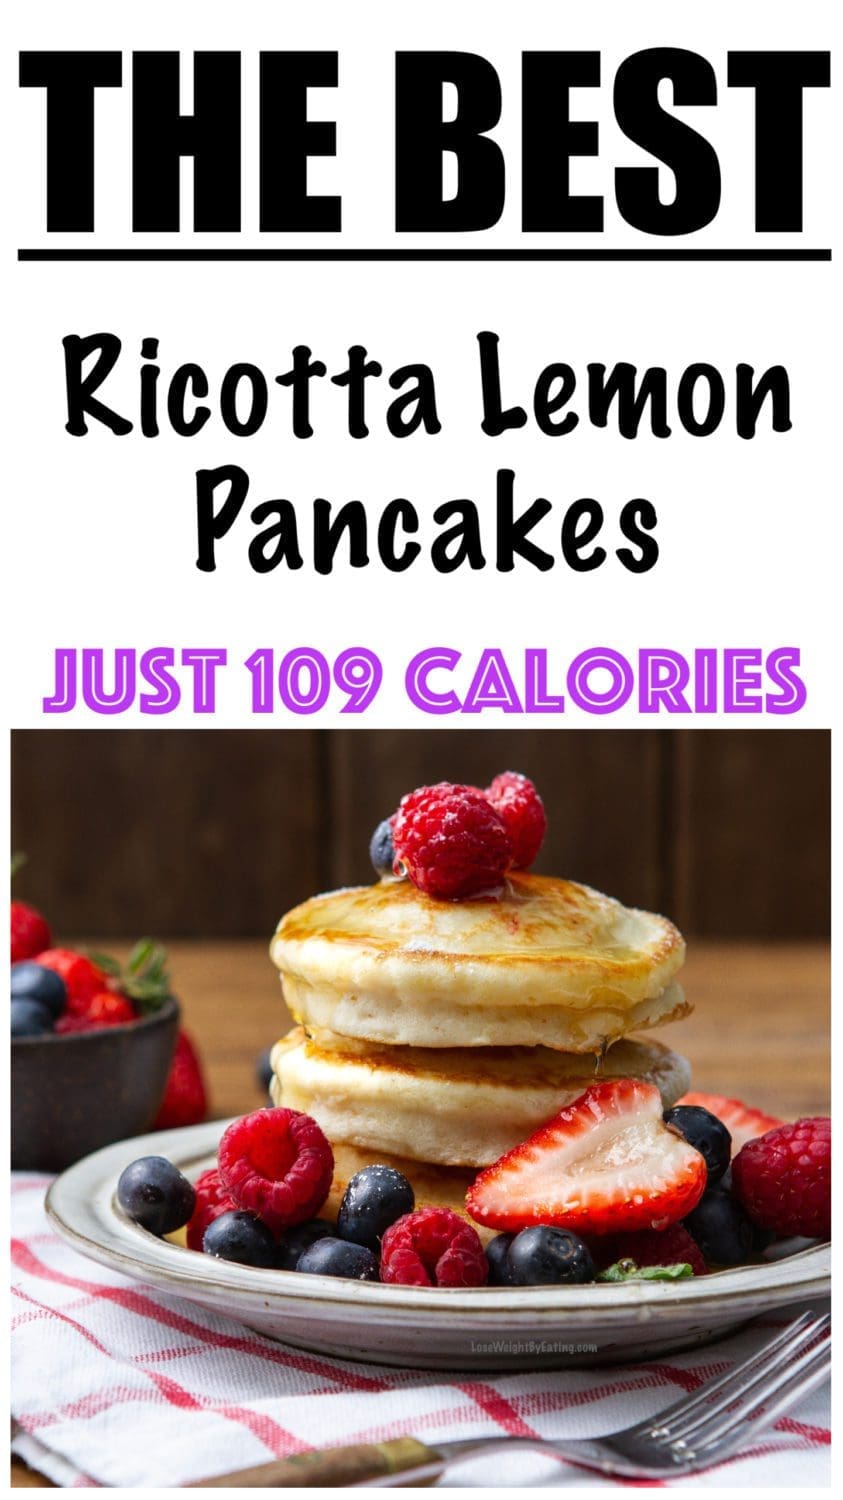 Ricotta Lemon Pancakes